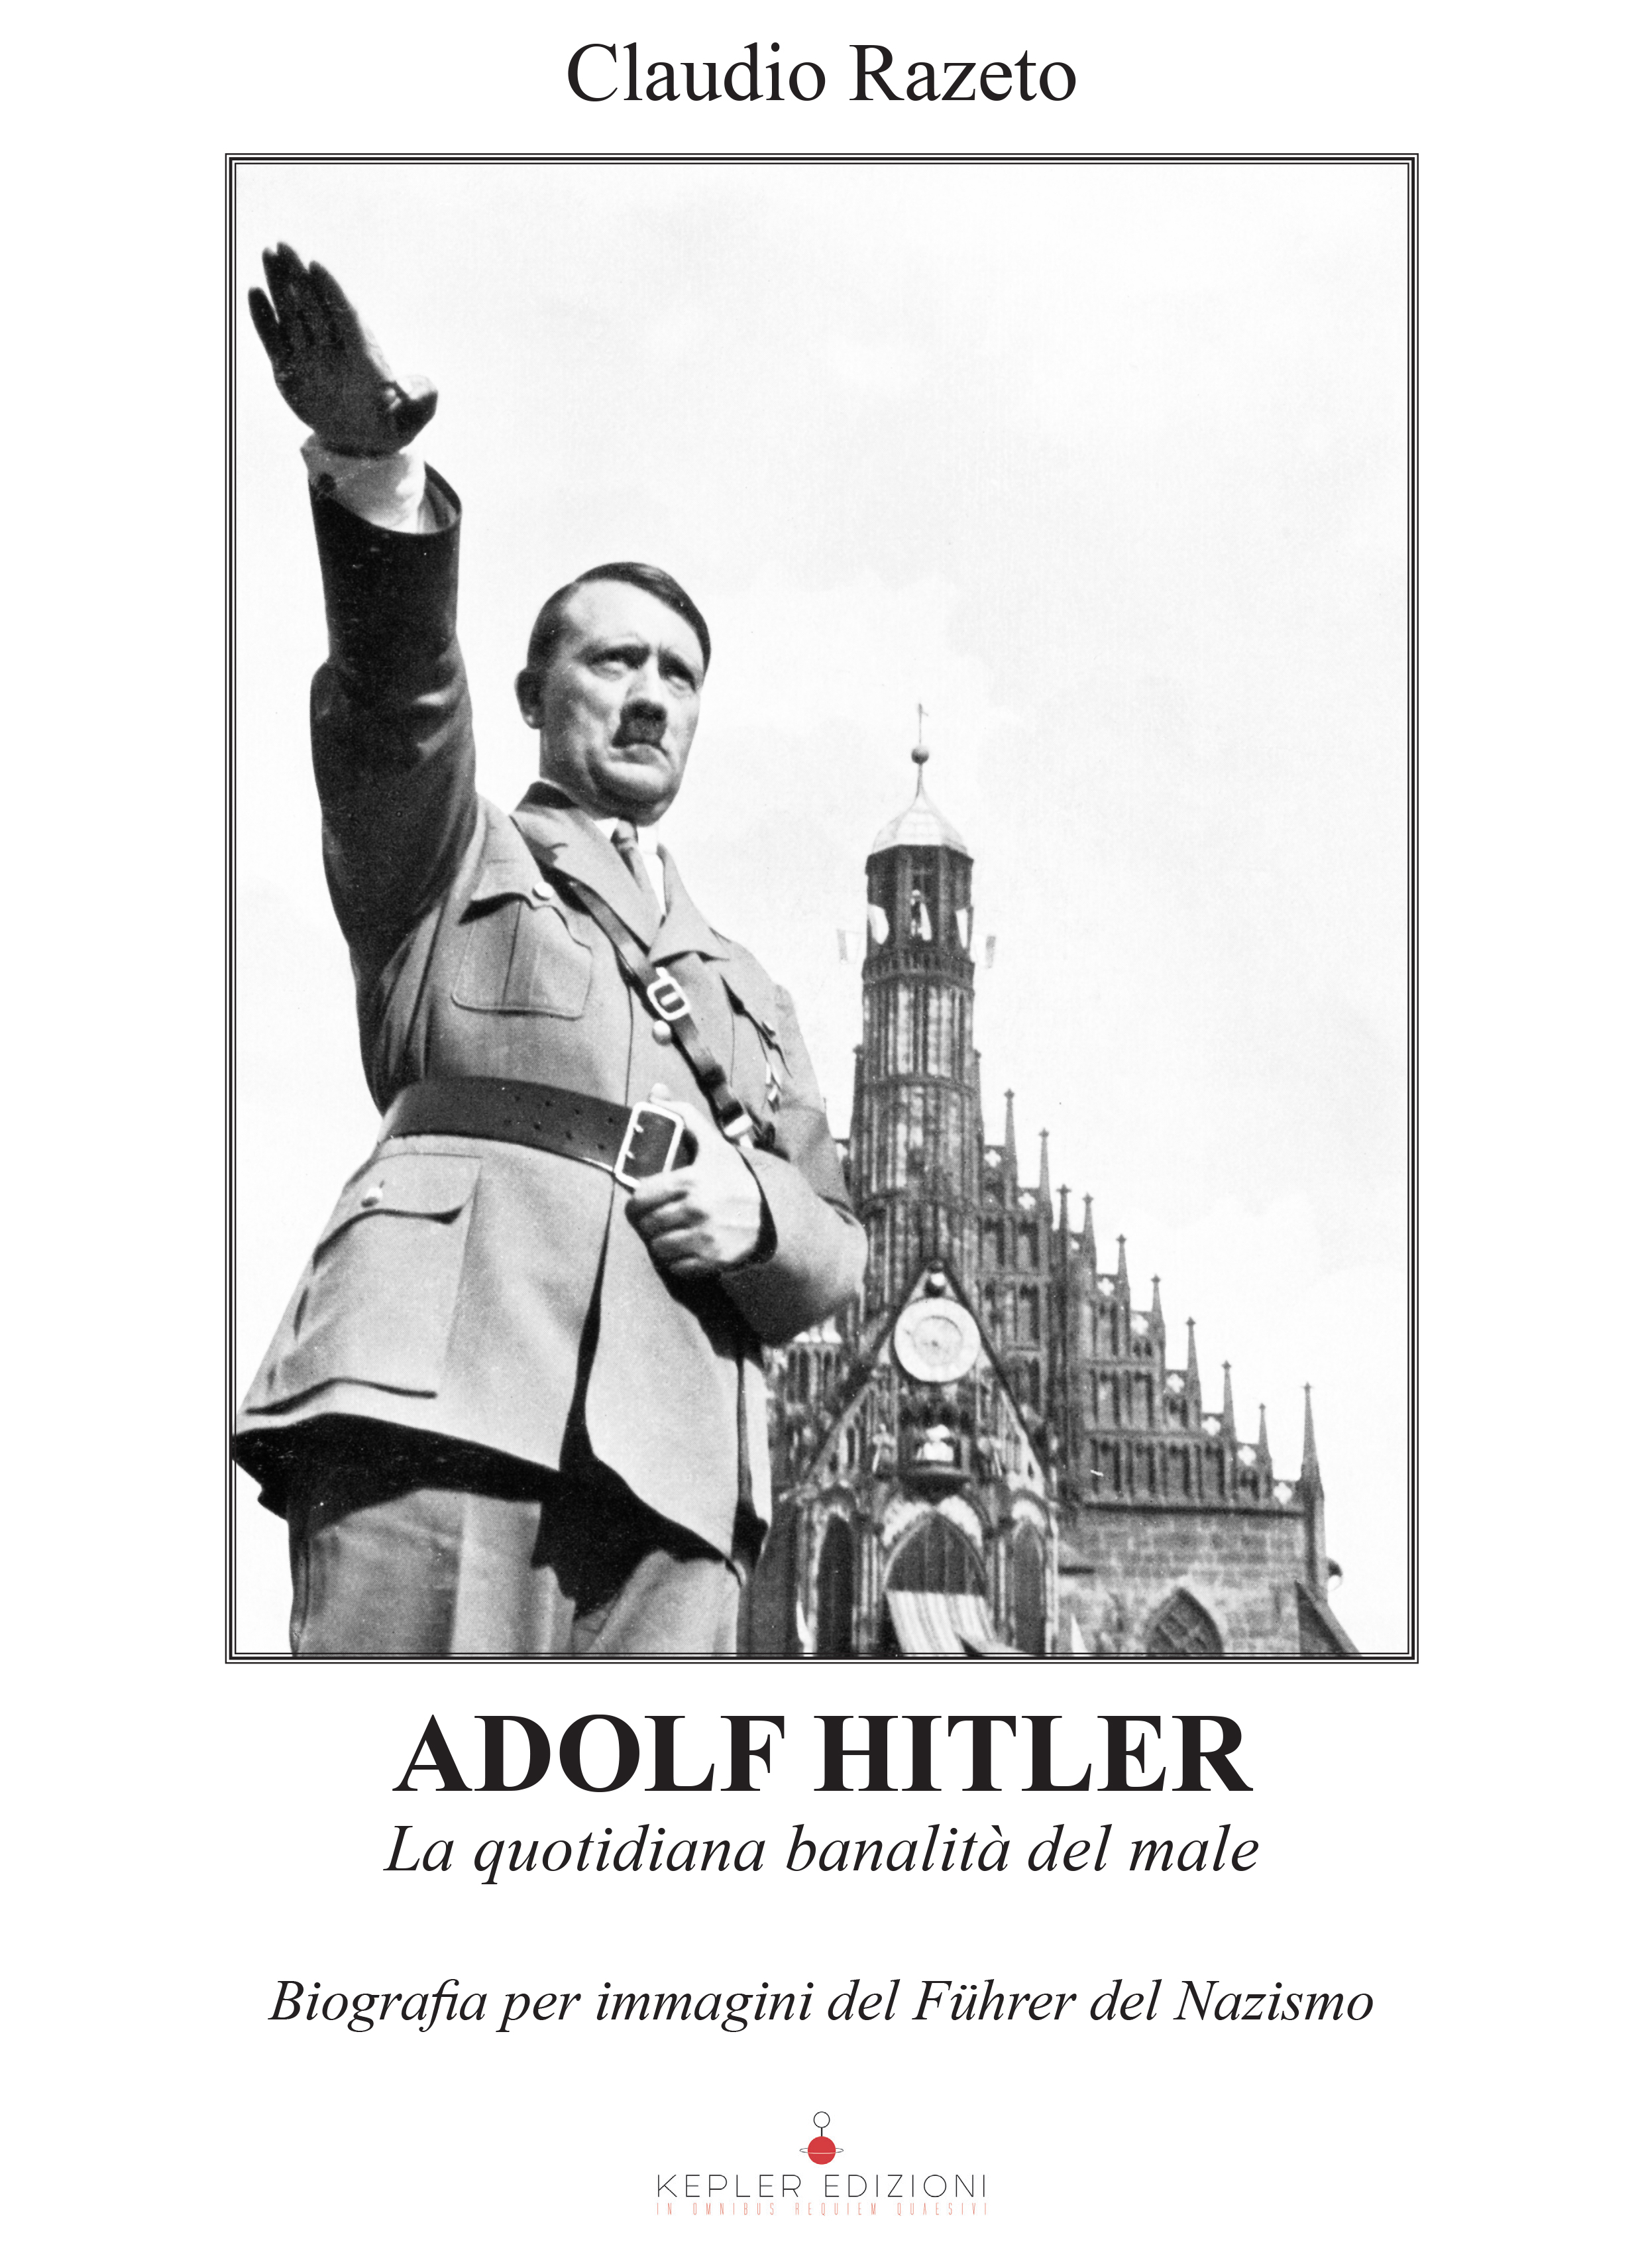 Copertina Elettronico_Adolf Hitler_Razeto